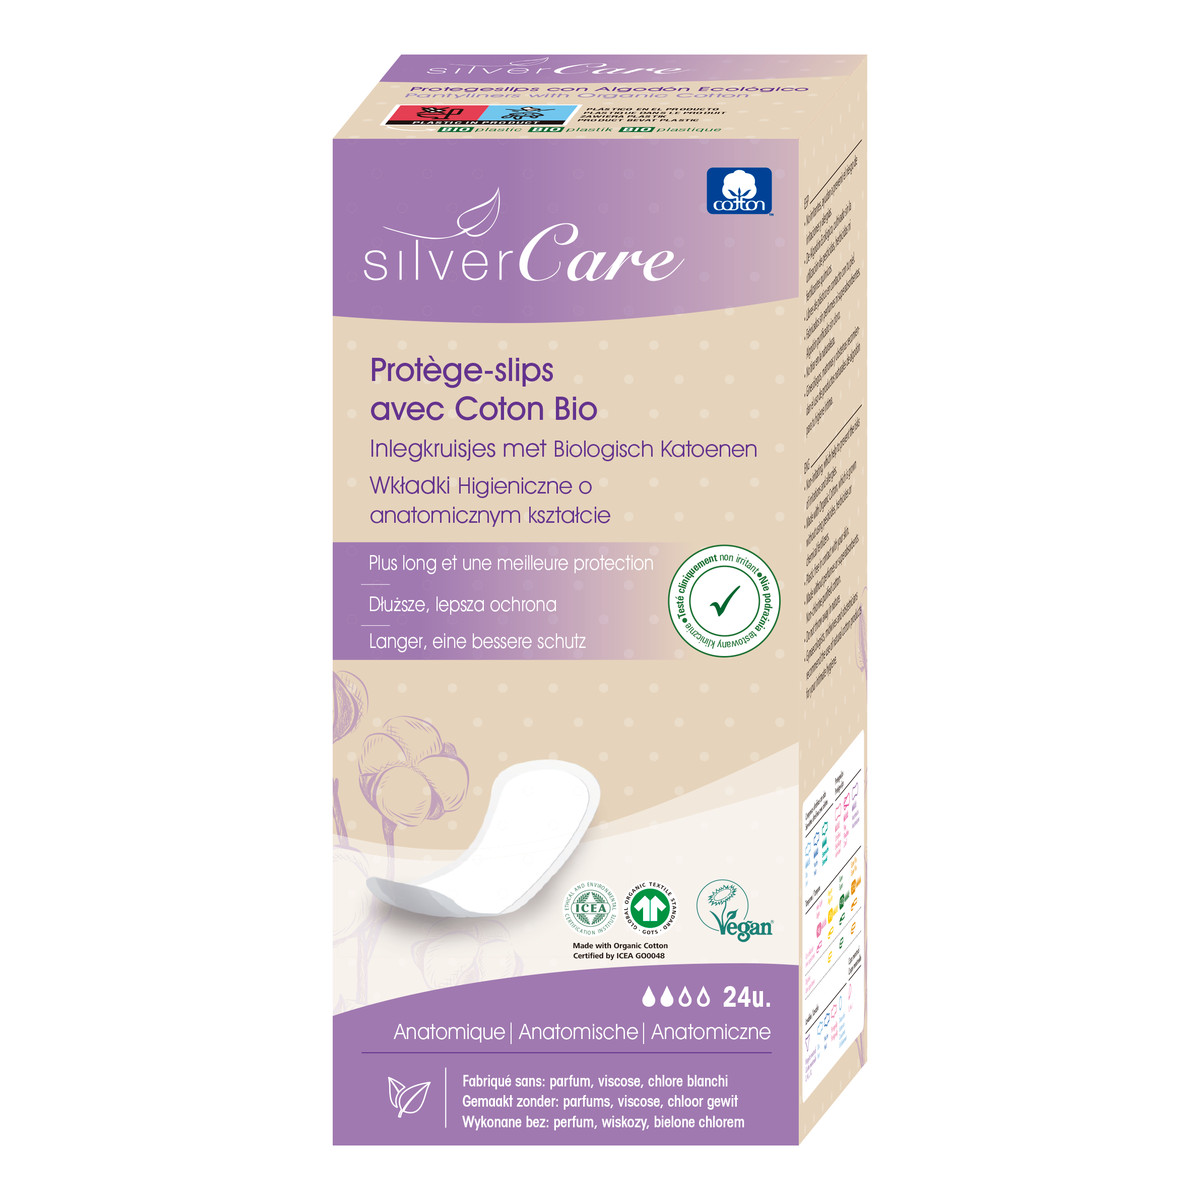 MASMI Silver Care Wkładki higieniczne o anatomicznym kształcie 100% bawełny organicznej 30szt